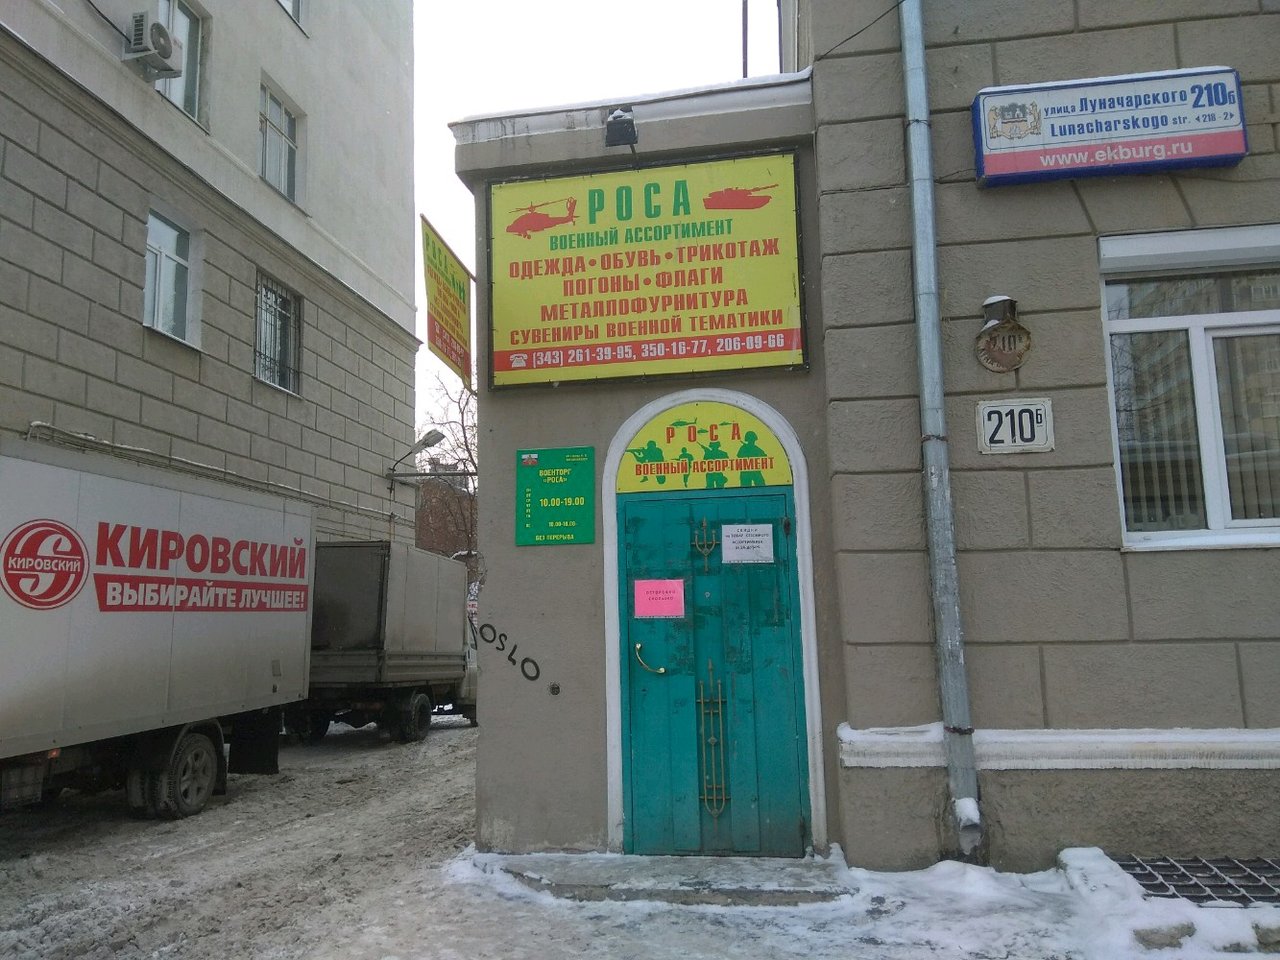 Вход в армейский магазин "Роса" на Луначарского в Екатеринбурге